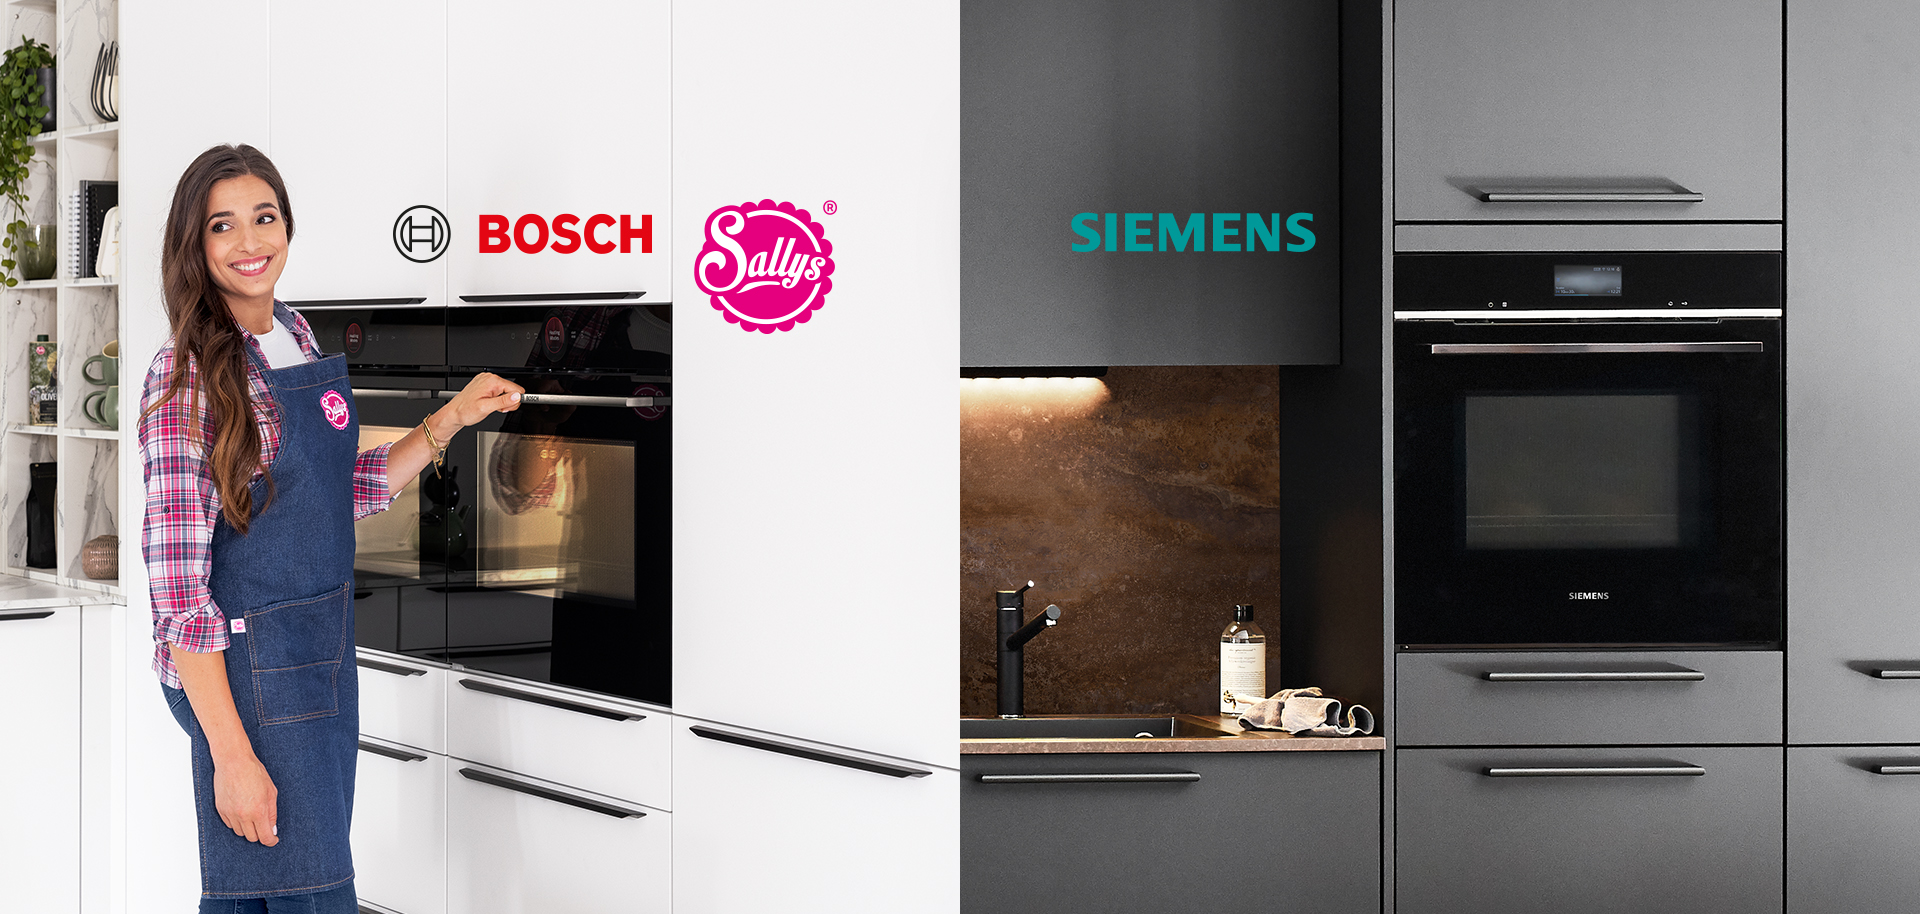 Eine lächelnde Person in einer Schürze präsentiert einen Bosch-Ofen, während auf der gegenüberliegenden Seite eine moderne Siemens-Küche mit eleganten Geräten präsentiert wird.